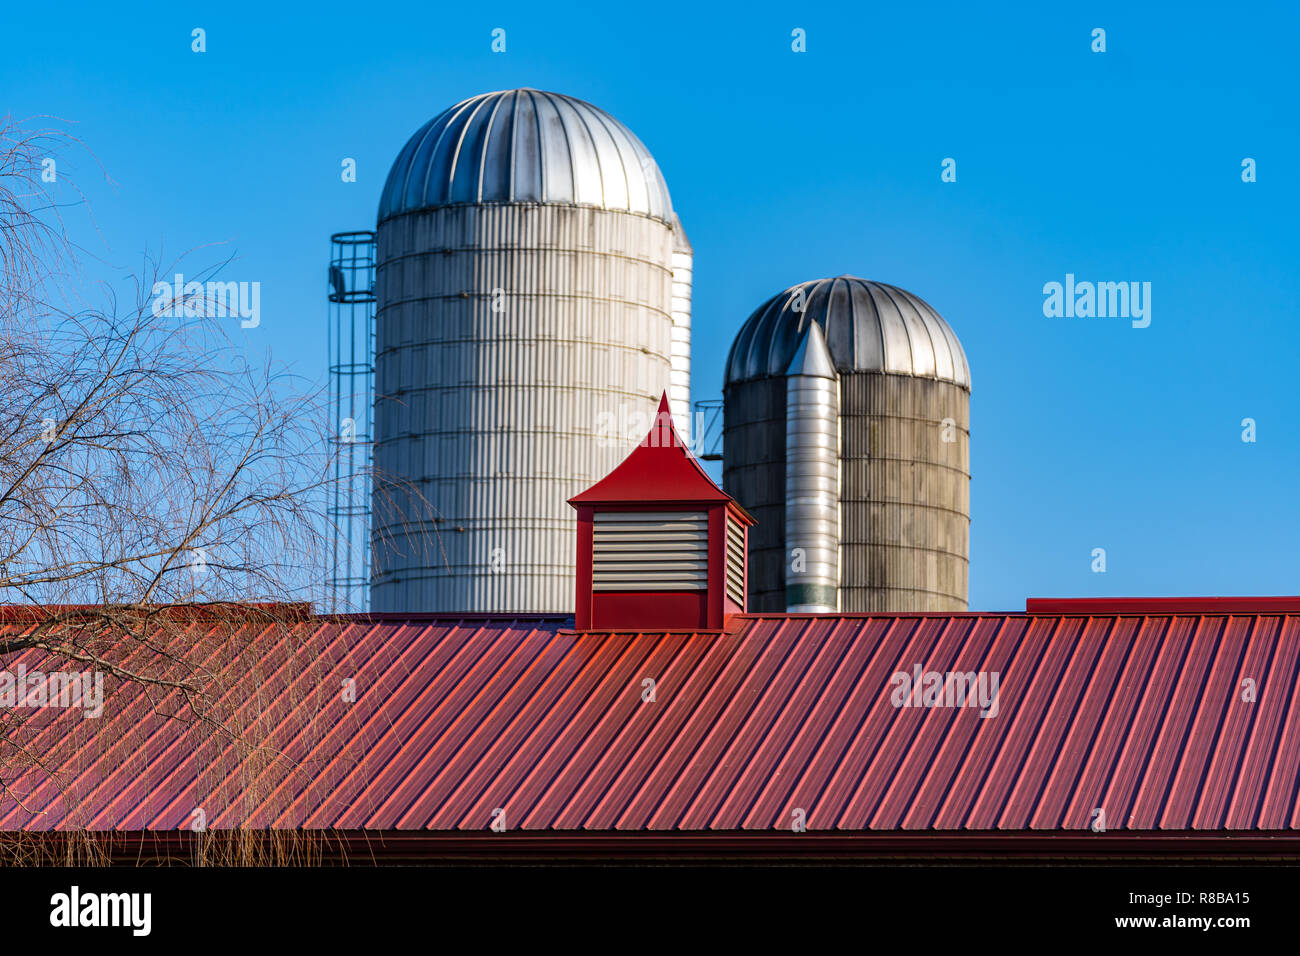 Bauernhof Silos stand in der Nähe eines roten Scheune Dach. Stockfoto